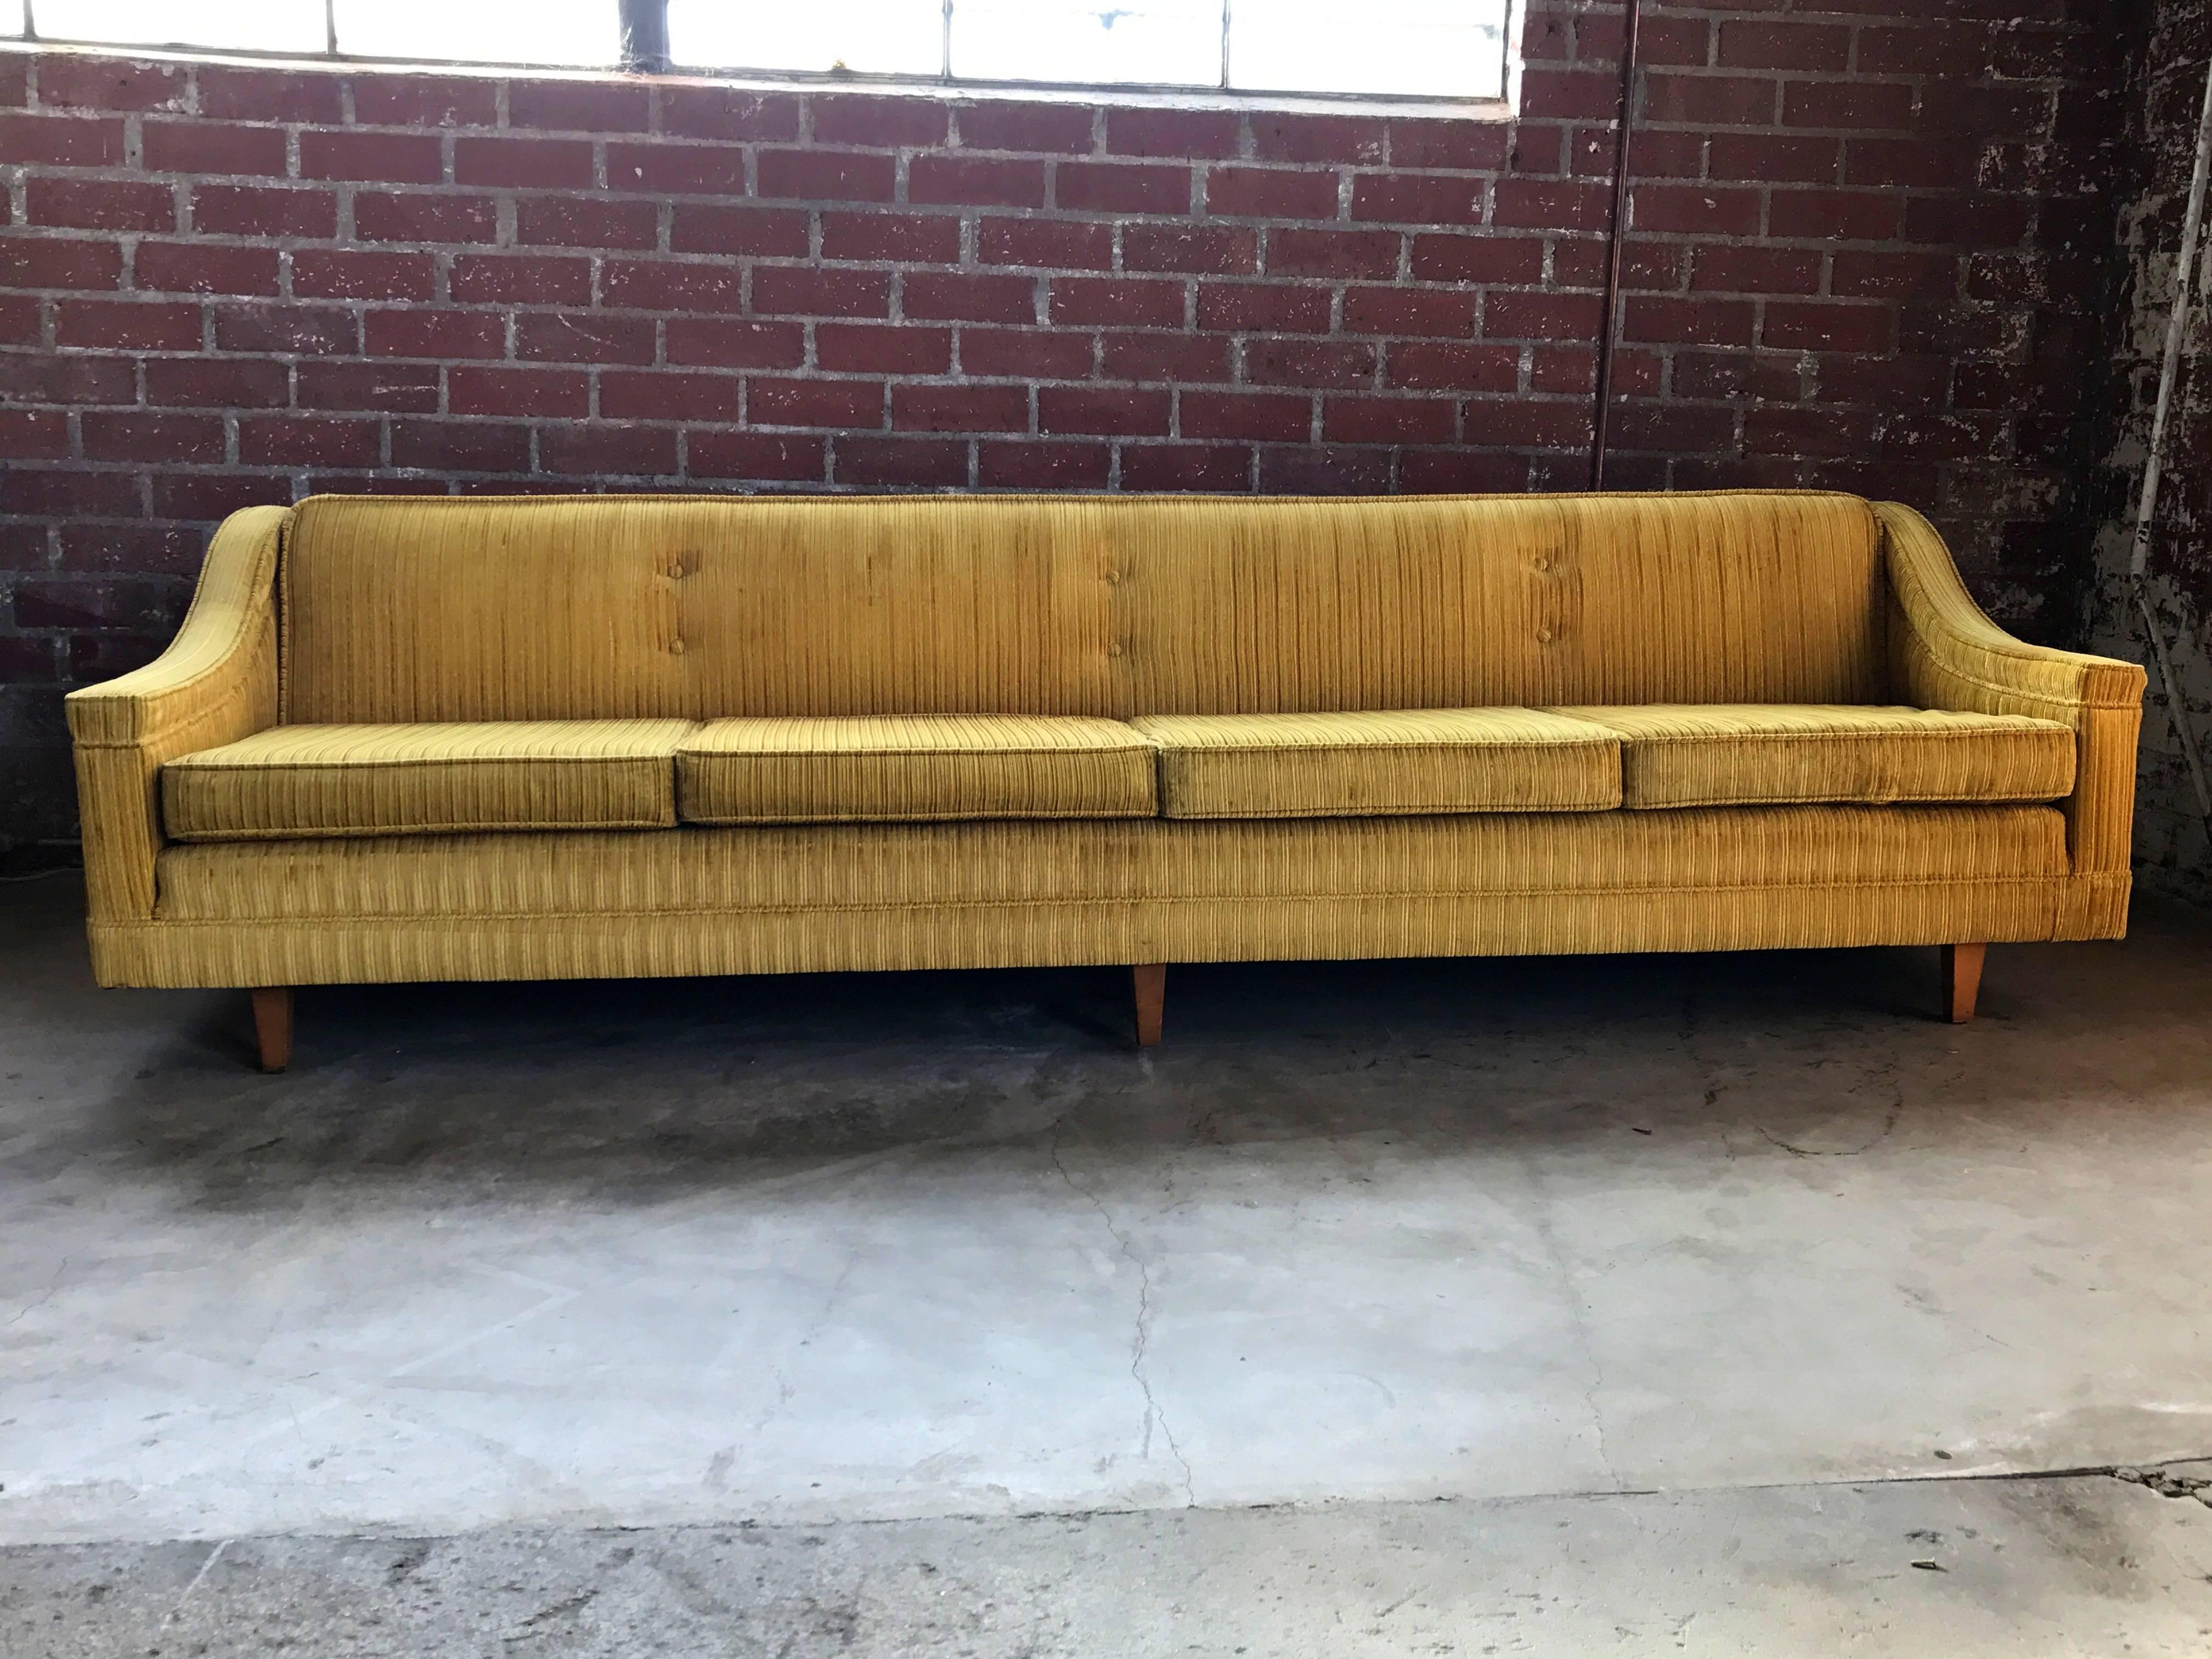 1960s Harvey Probber sofa upholstered in gold velvet corduroy fabric. Wooden legs.